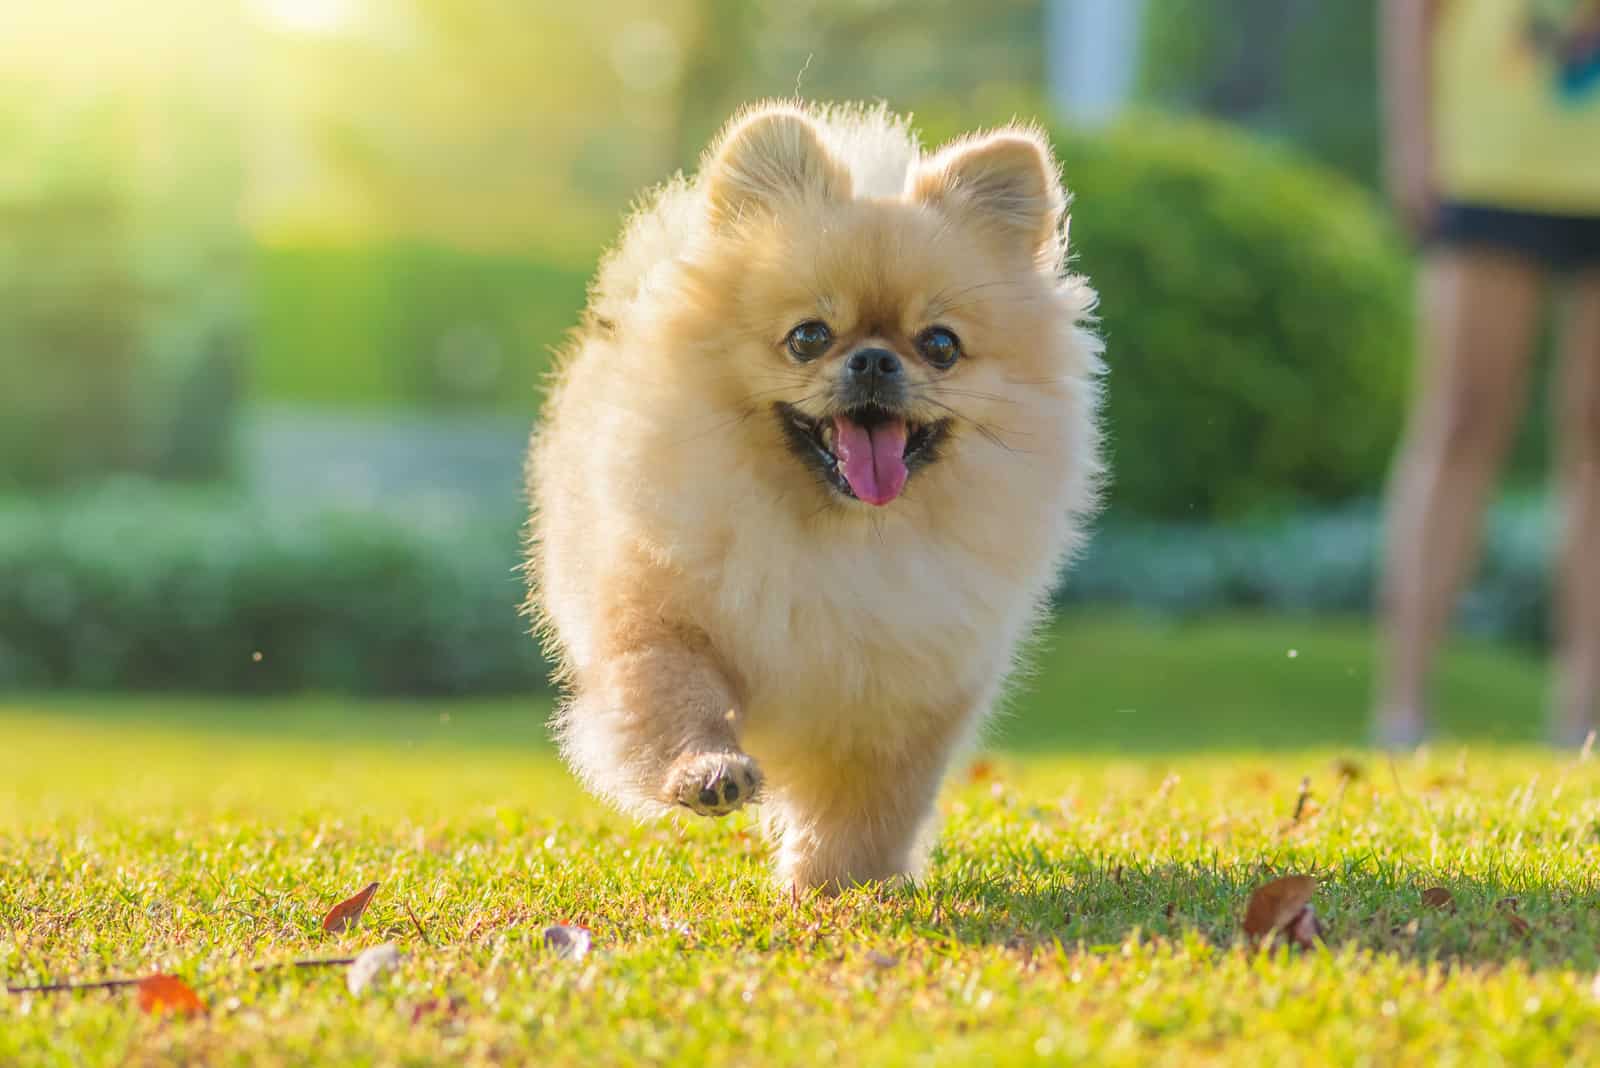 Pomeranian running on grass